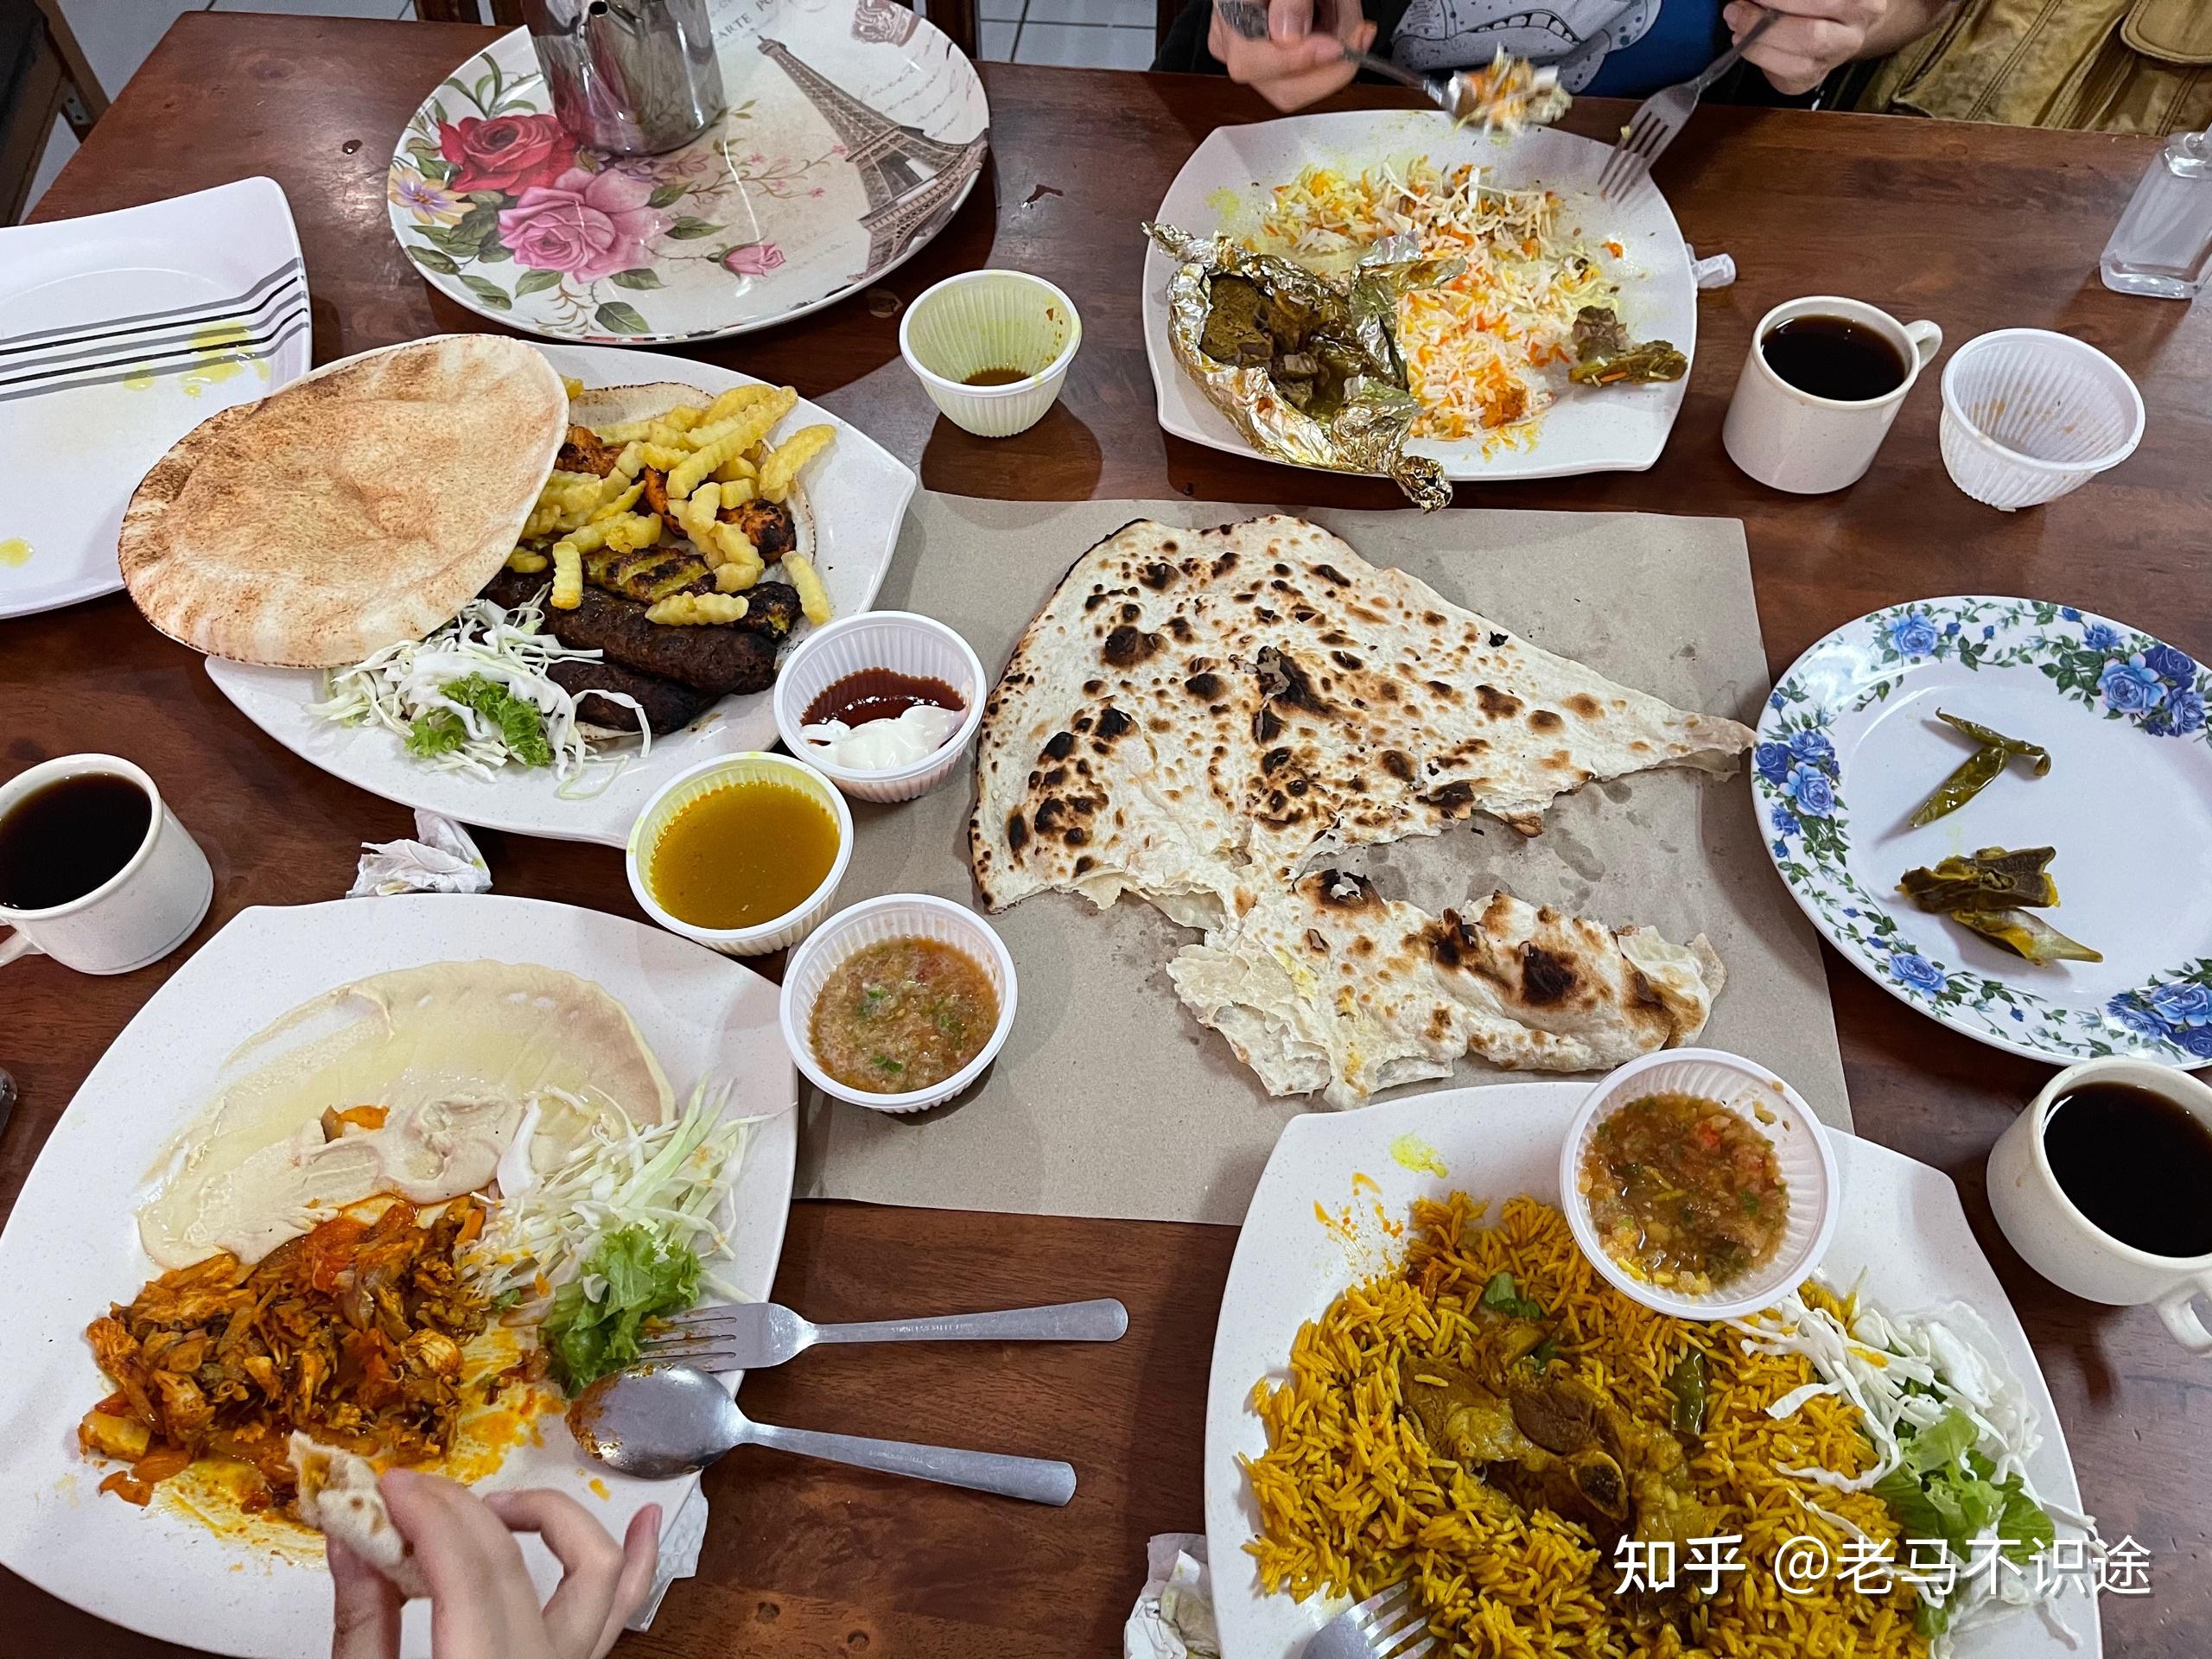 阿拉伯自助餐用东方食物 库存照片. 图片 包括有 可口, 可耕的, 辣椒, 黎巴嫩, 抛光, 缓和, 油煎 - 152526286